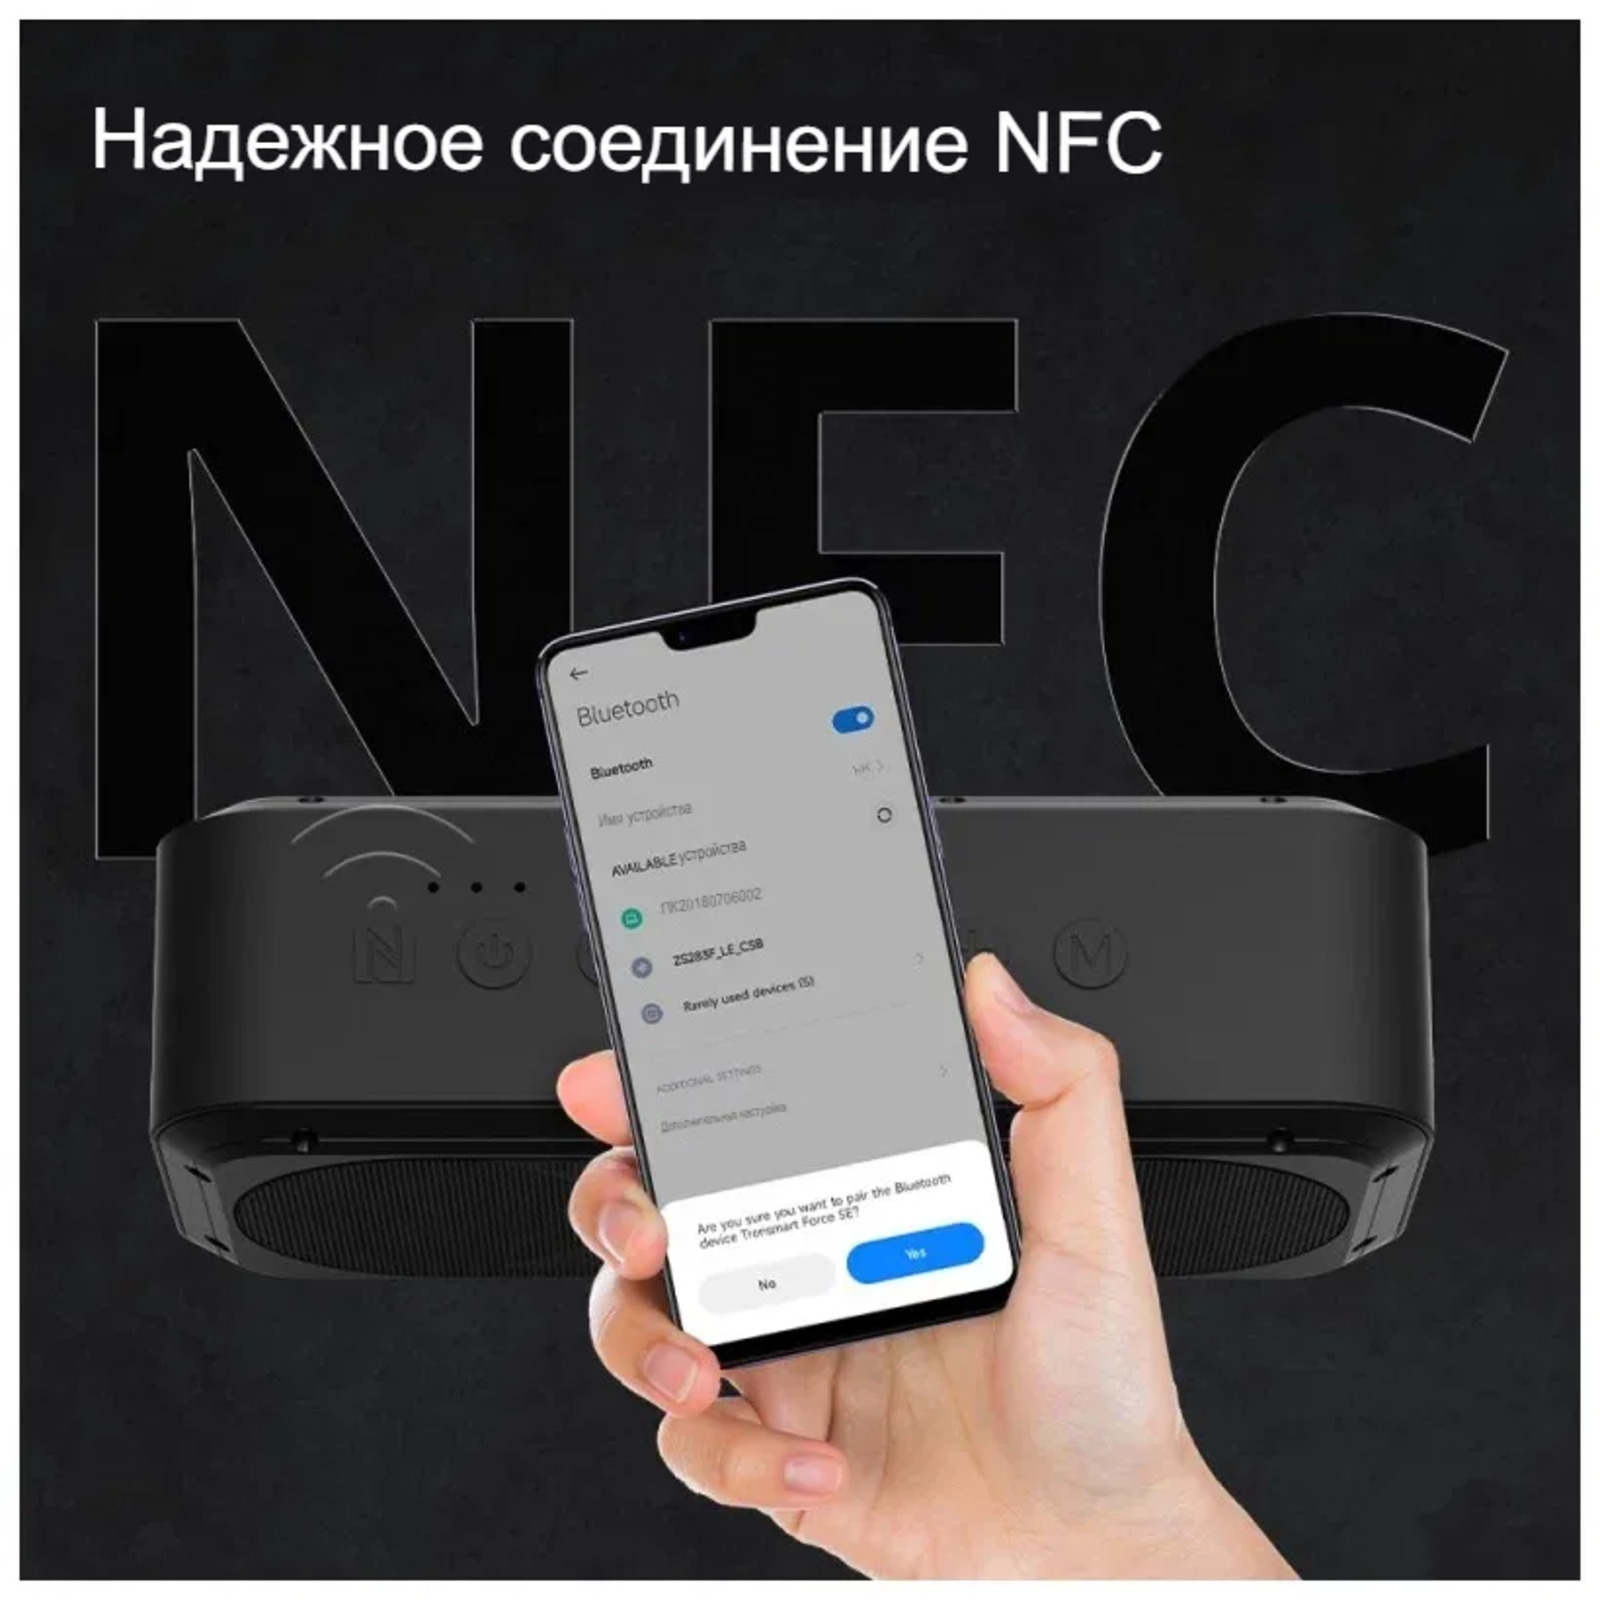 Надёжное соединение NFC.